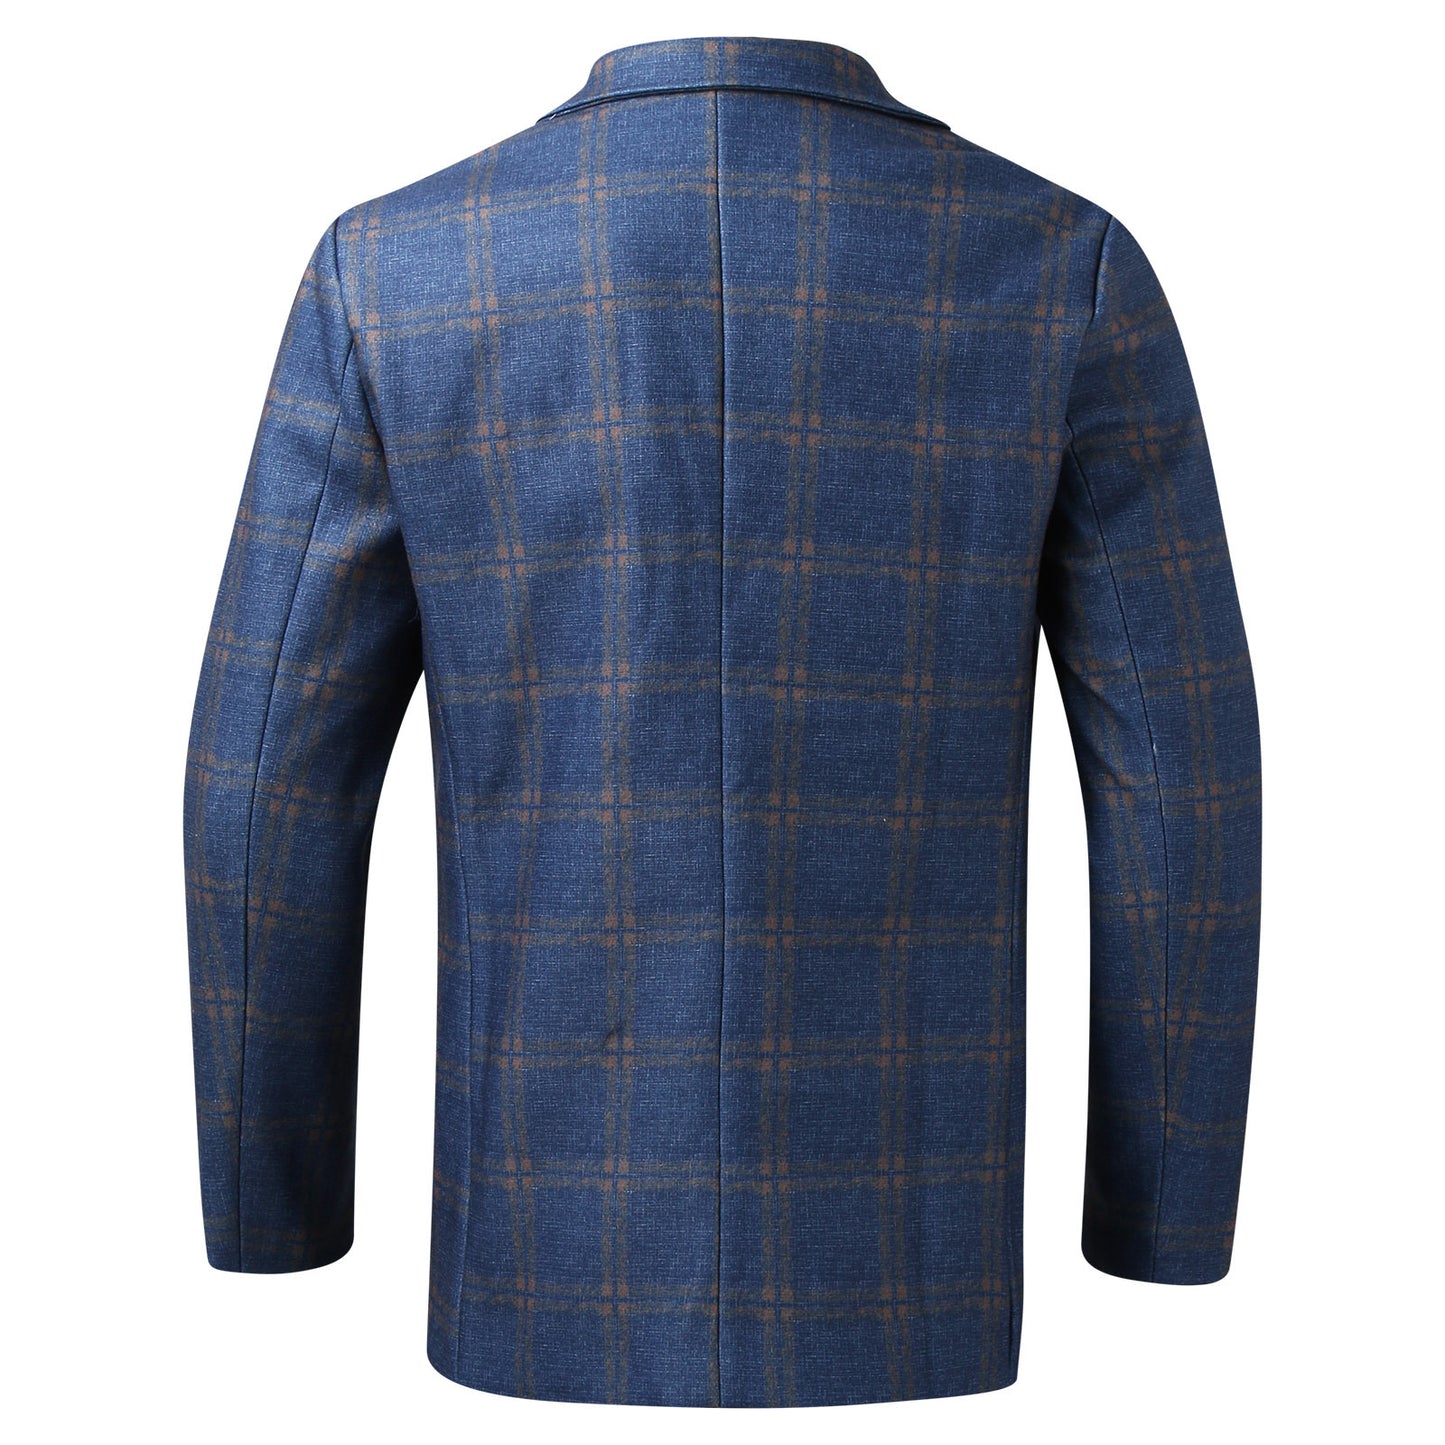 Men's Plaid Lapel Long Sleeve Suit Coat Men's Business Suit